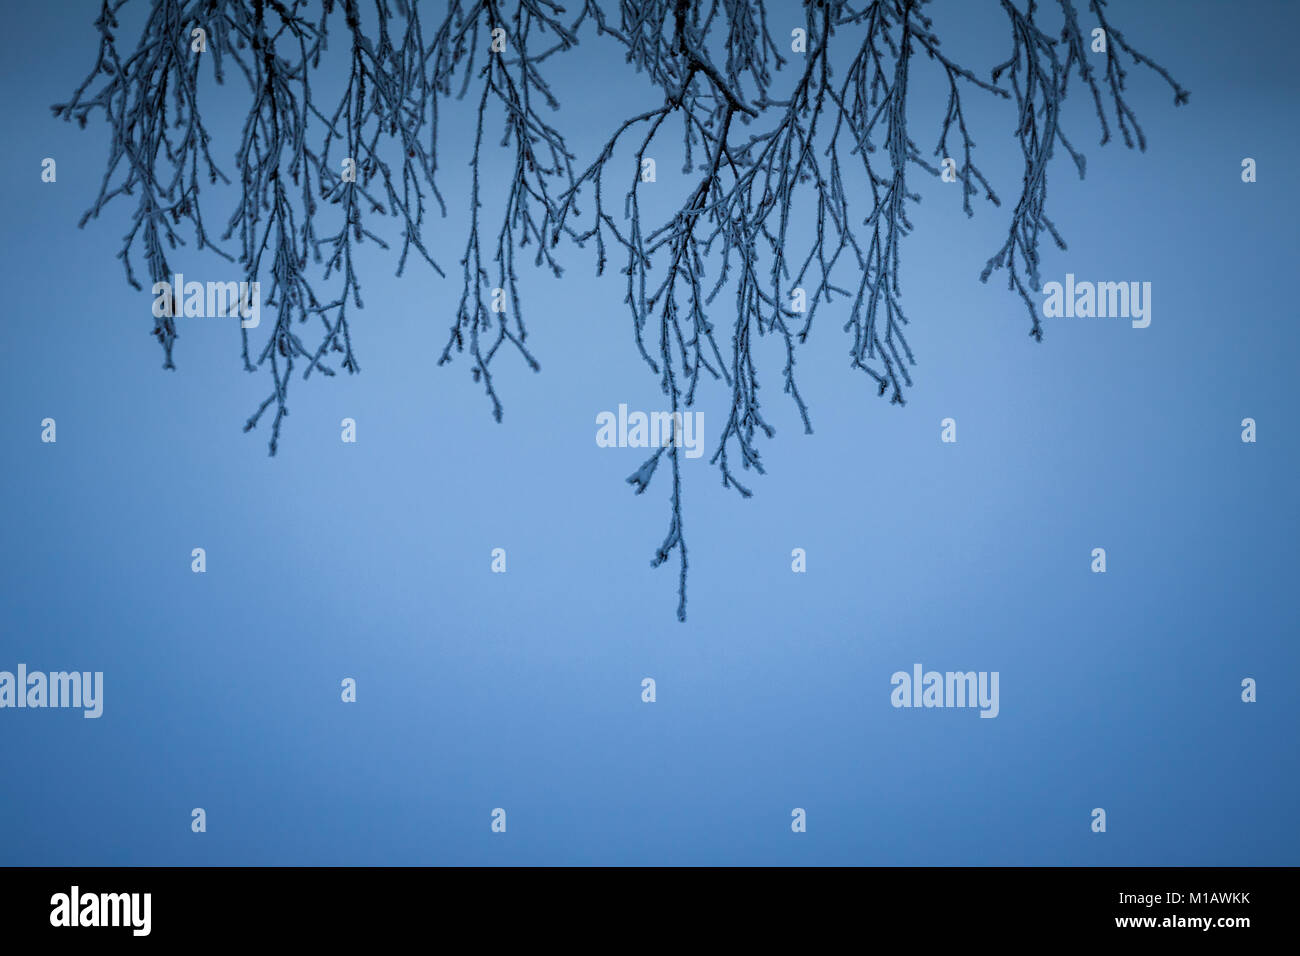 Silhouette de petit arbre des branches, avec de la neige gelée, suspendu verticalement depuis le haut du châssis, contre fond dégradé bleu Banque D'Images